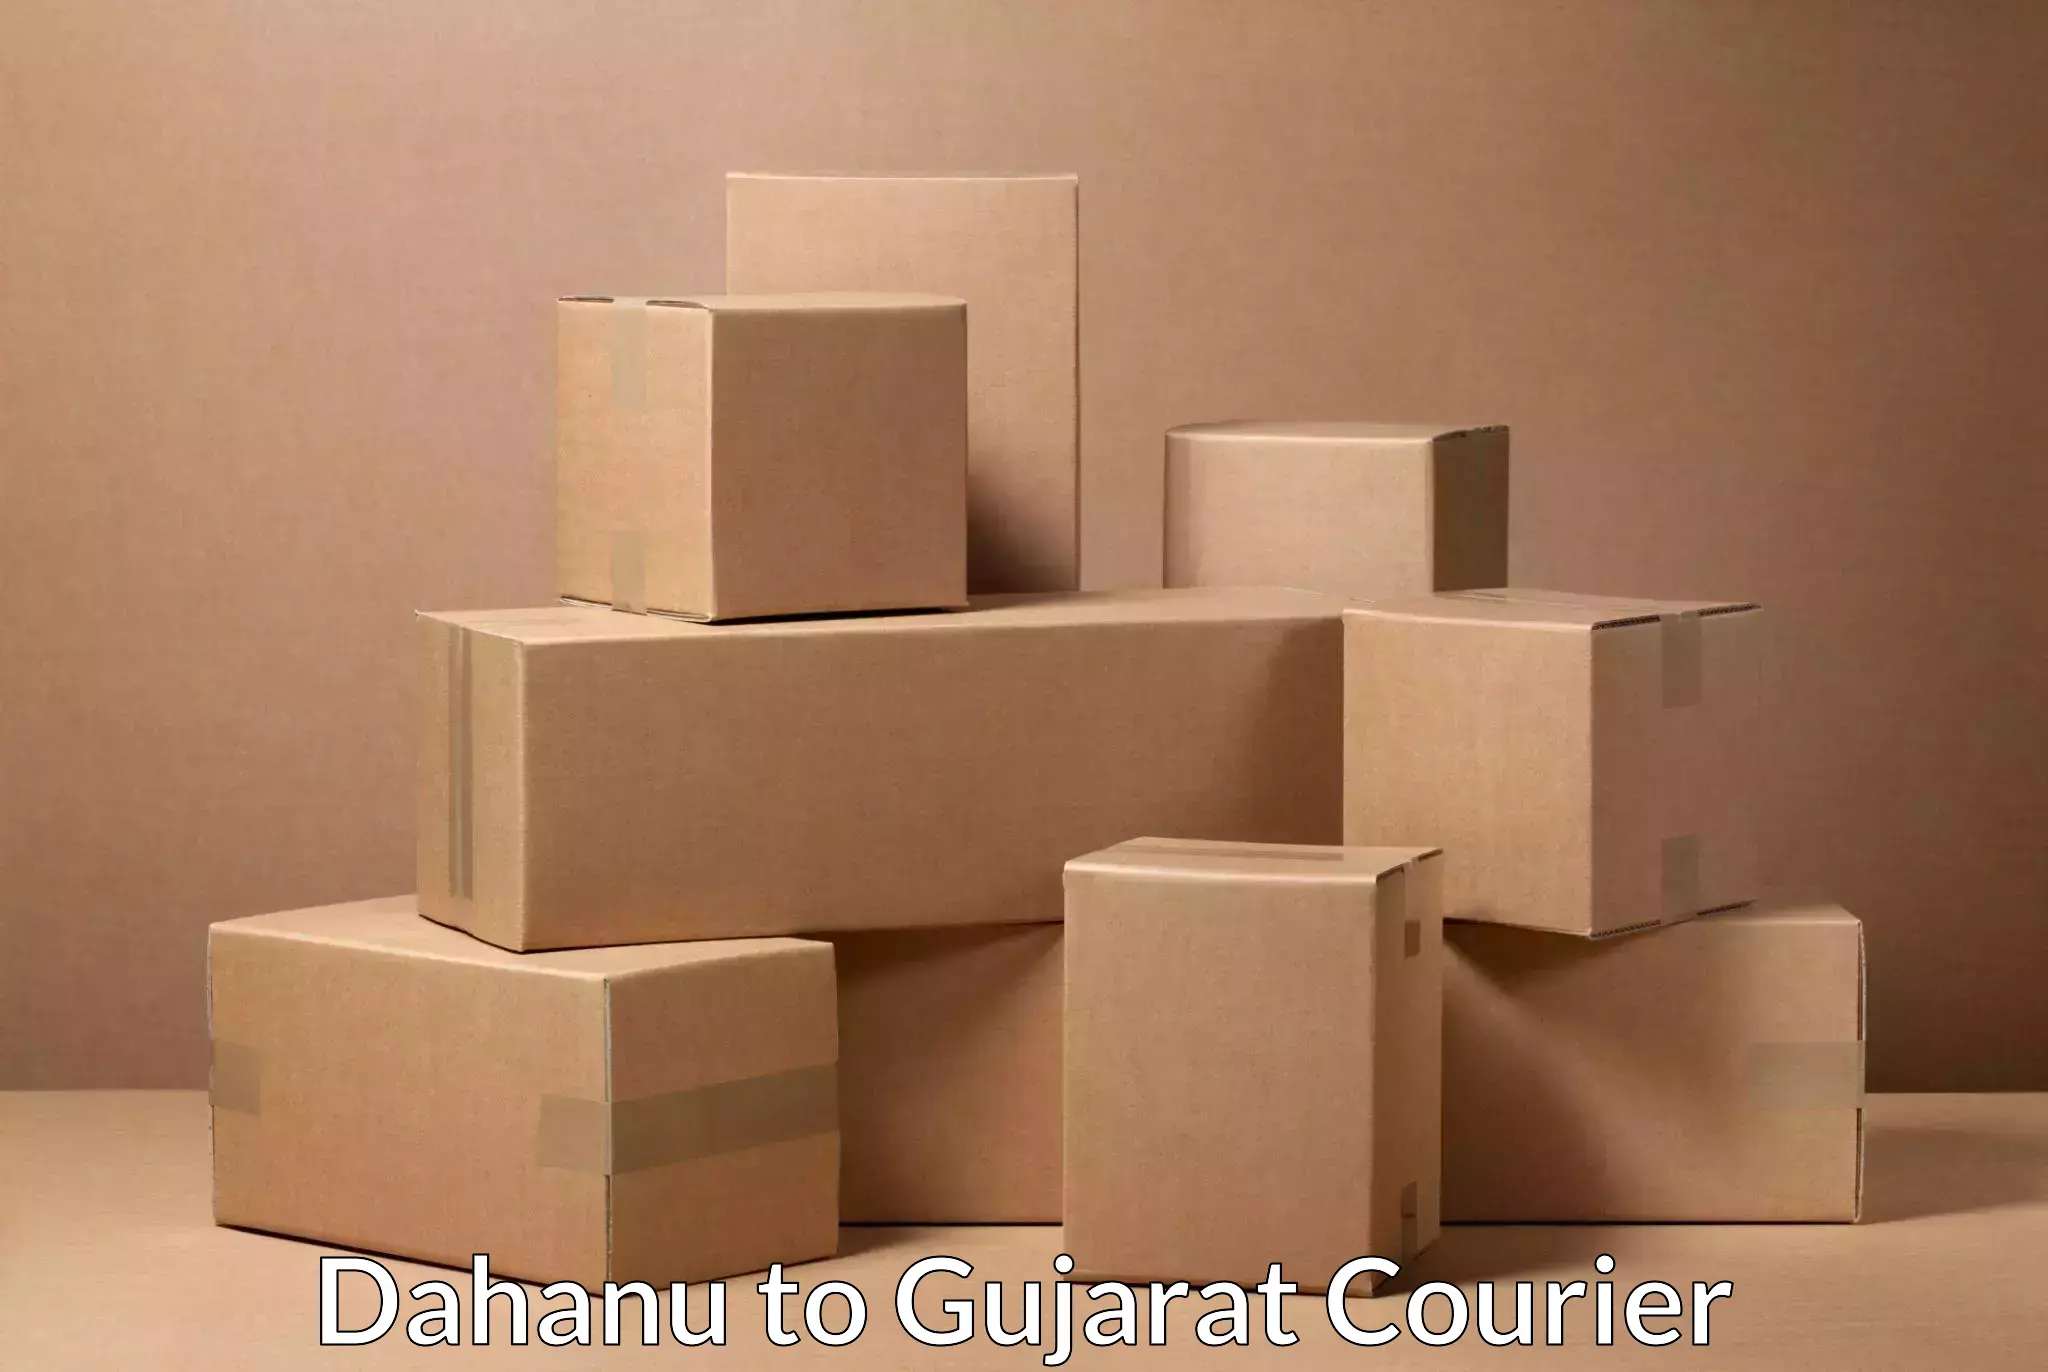 Express courier capabilities Dahanu to Idar